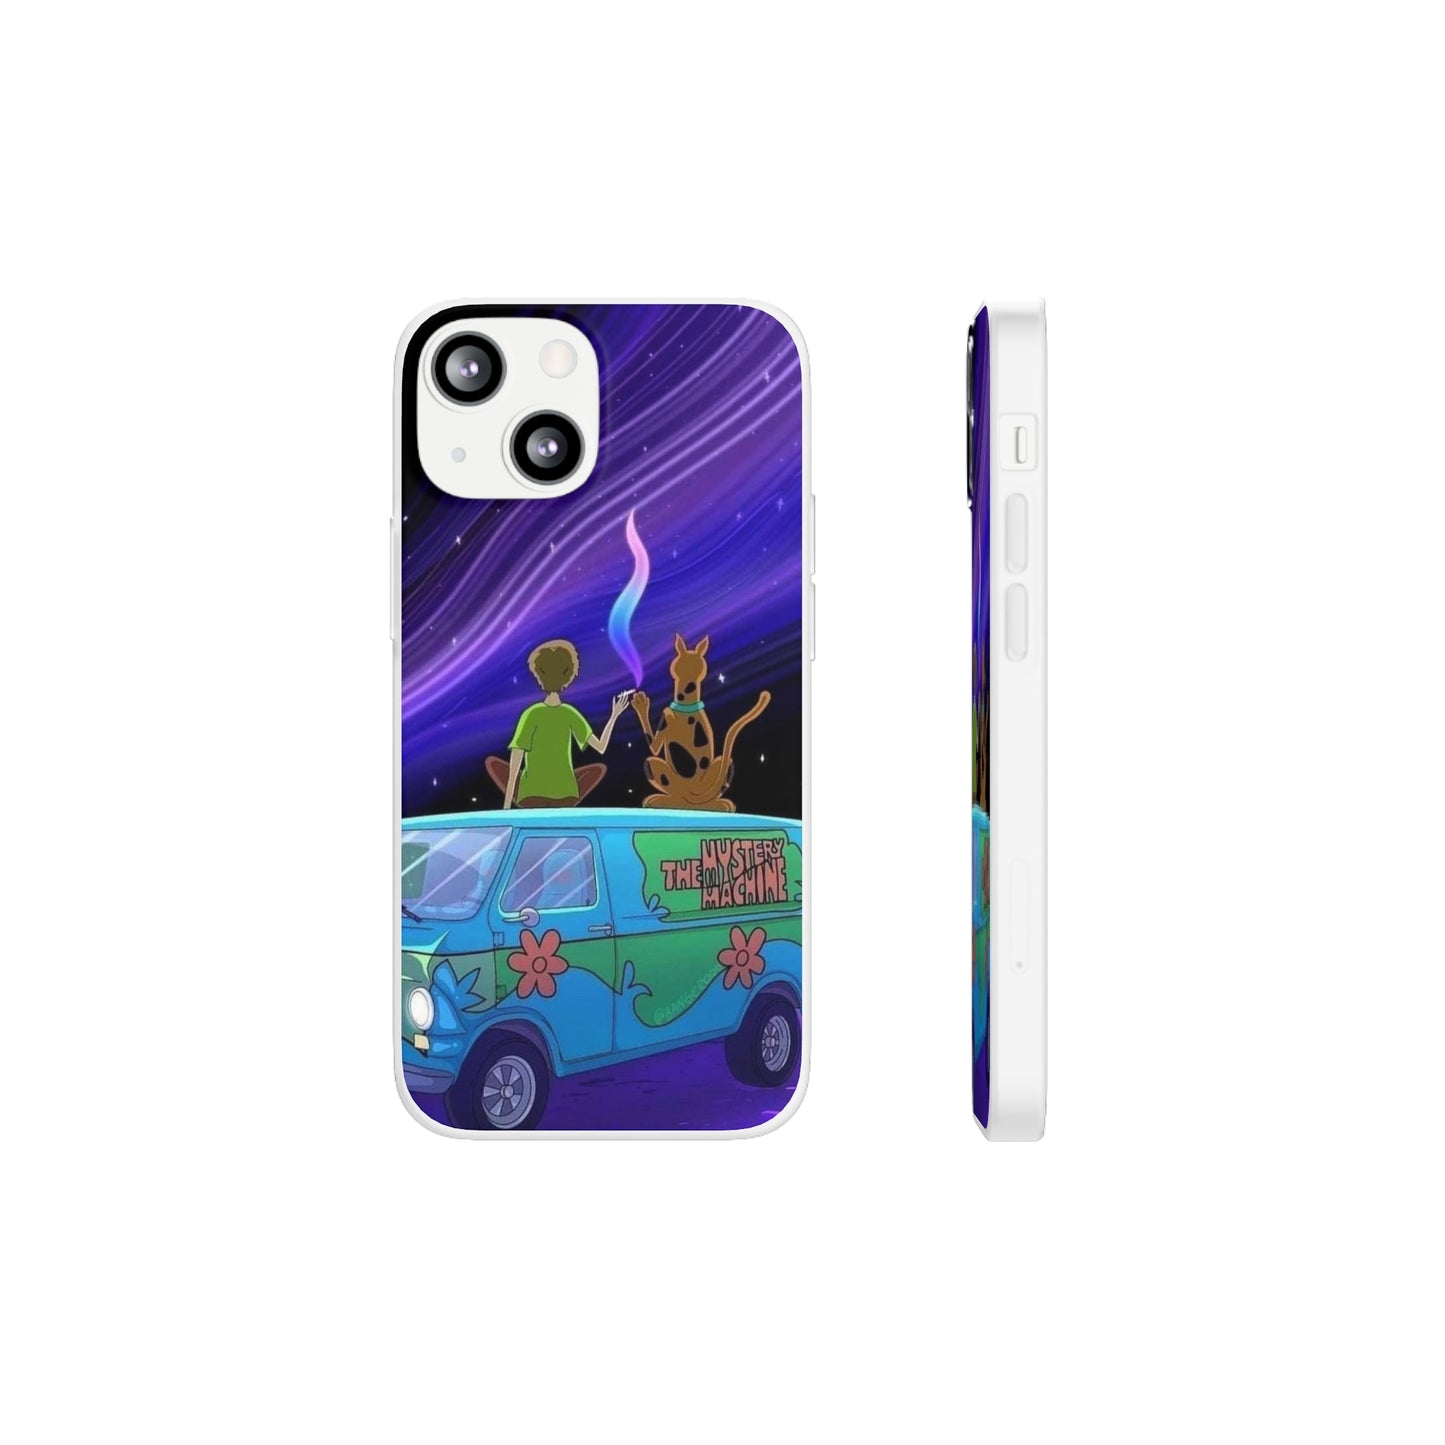 Scooby Doo Phone Case